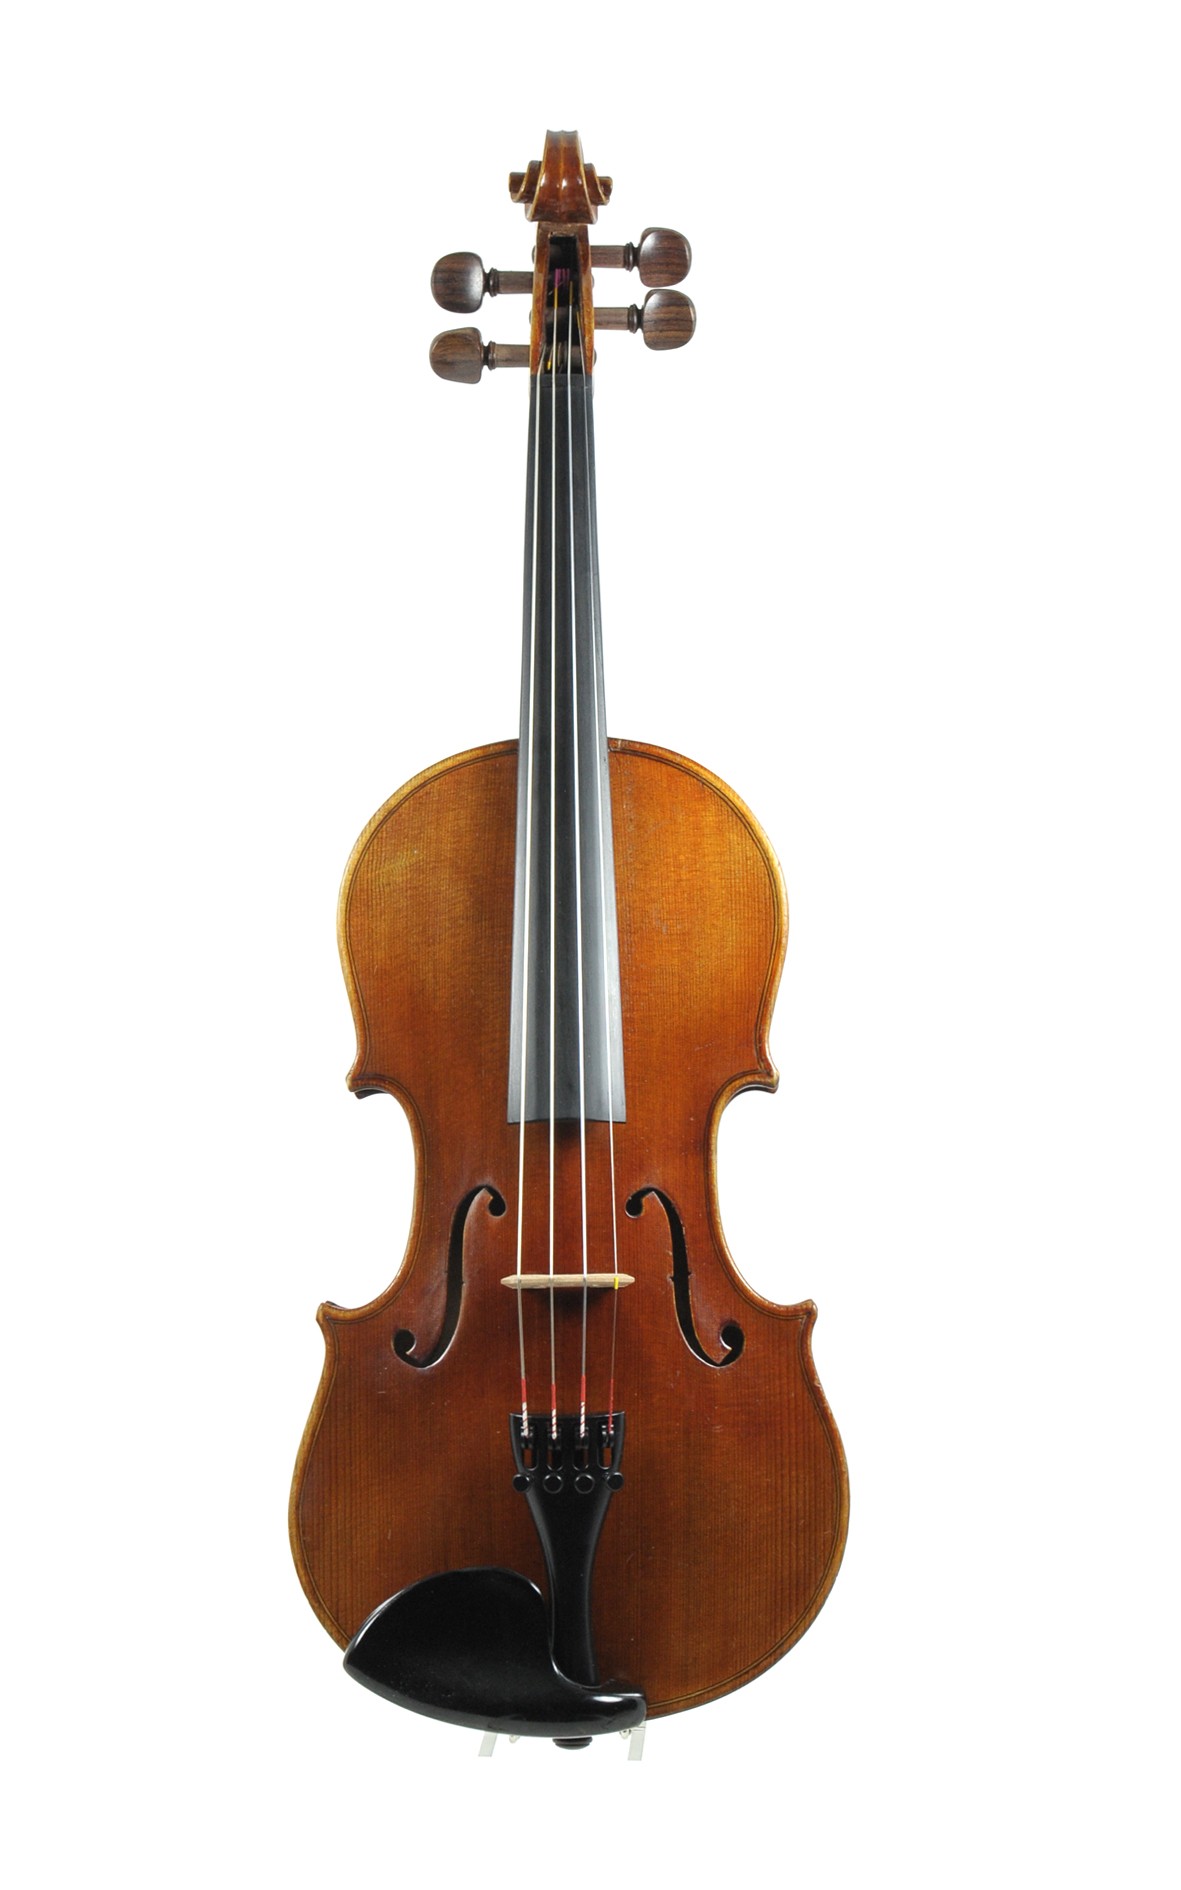 3/4 violin. Old, oil varnished German violin